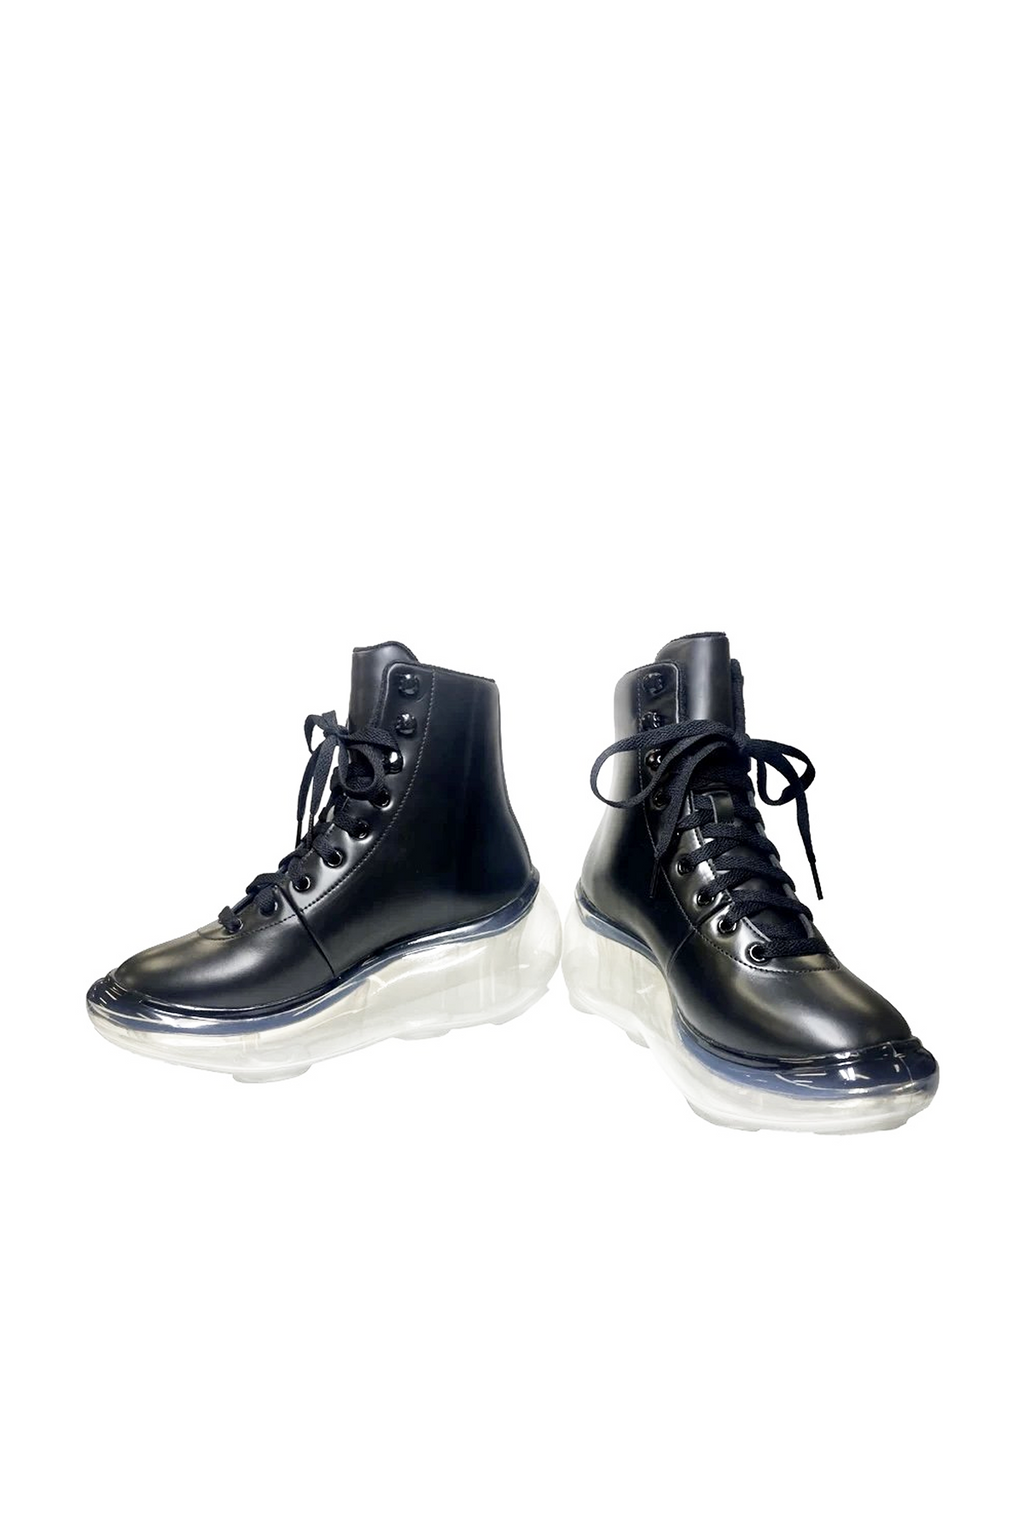 ミキオサカベ  Ice skate boots 厚底ブーツ